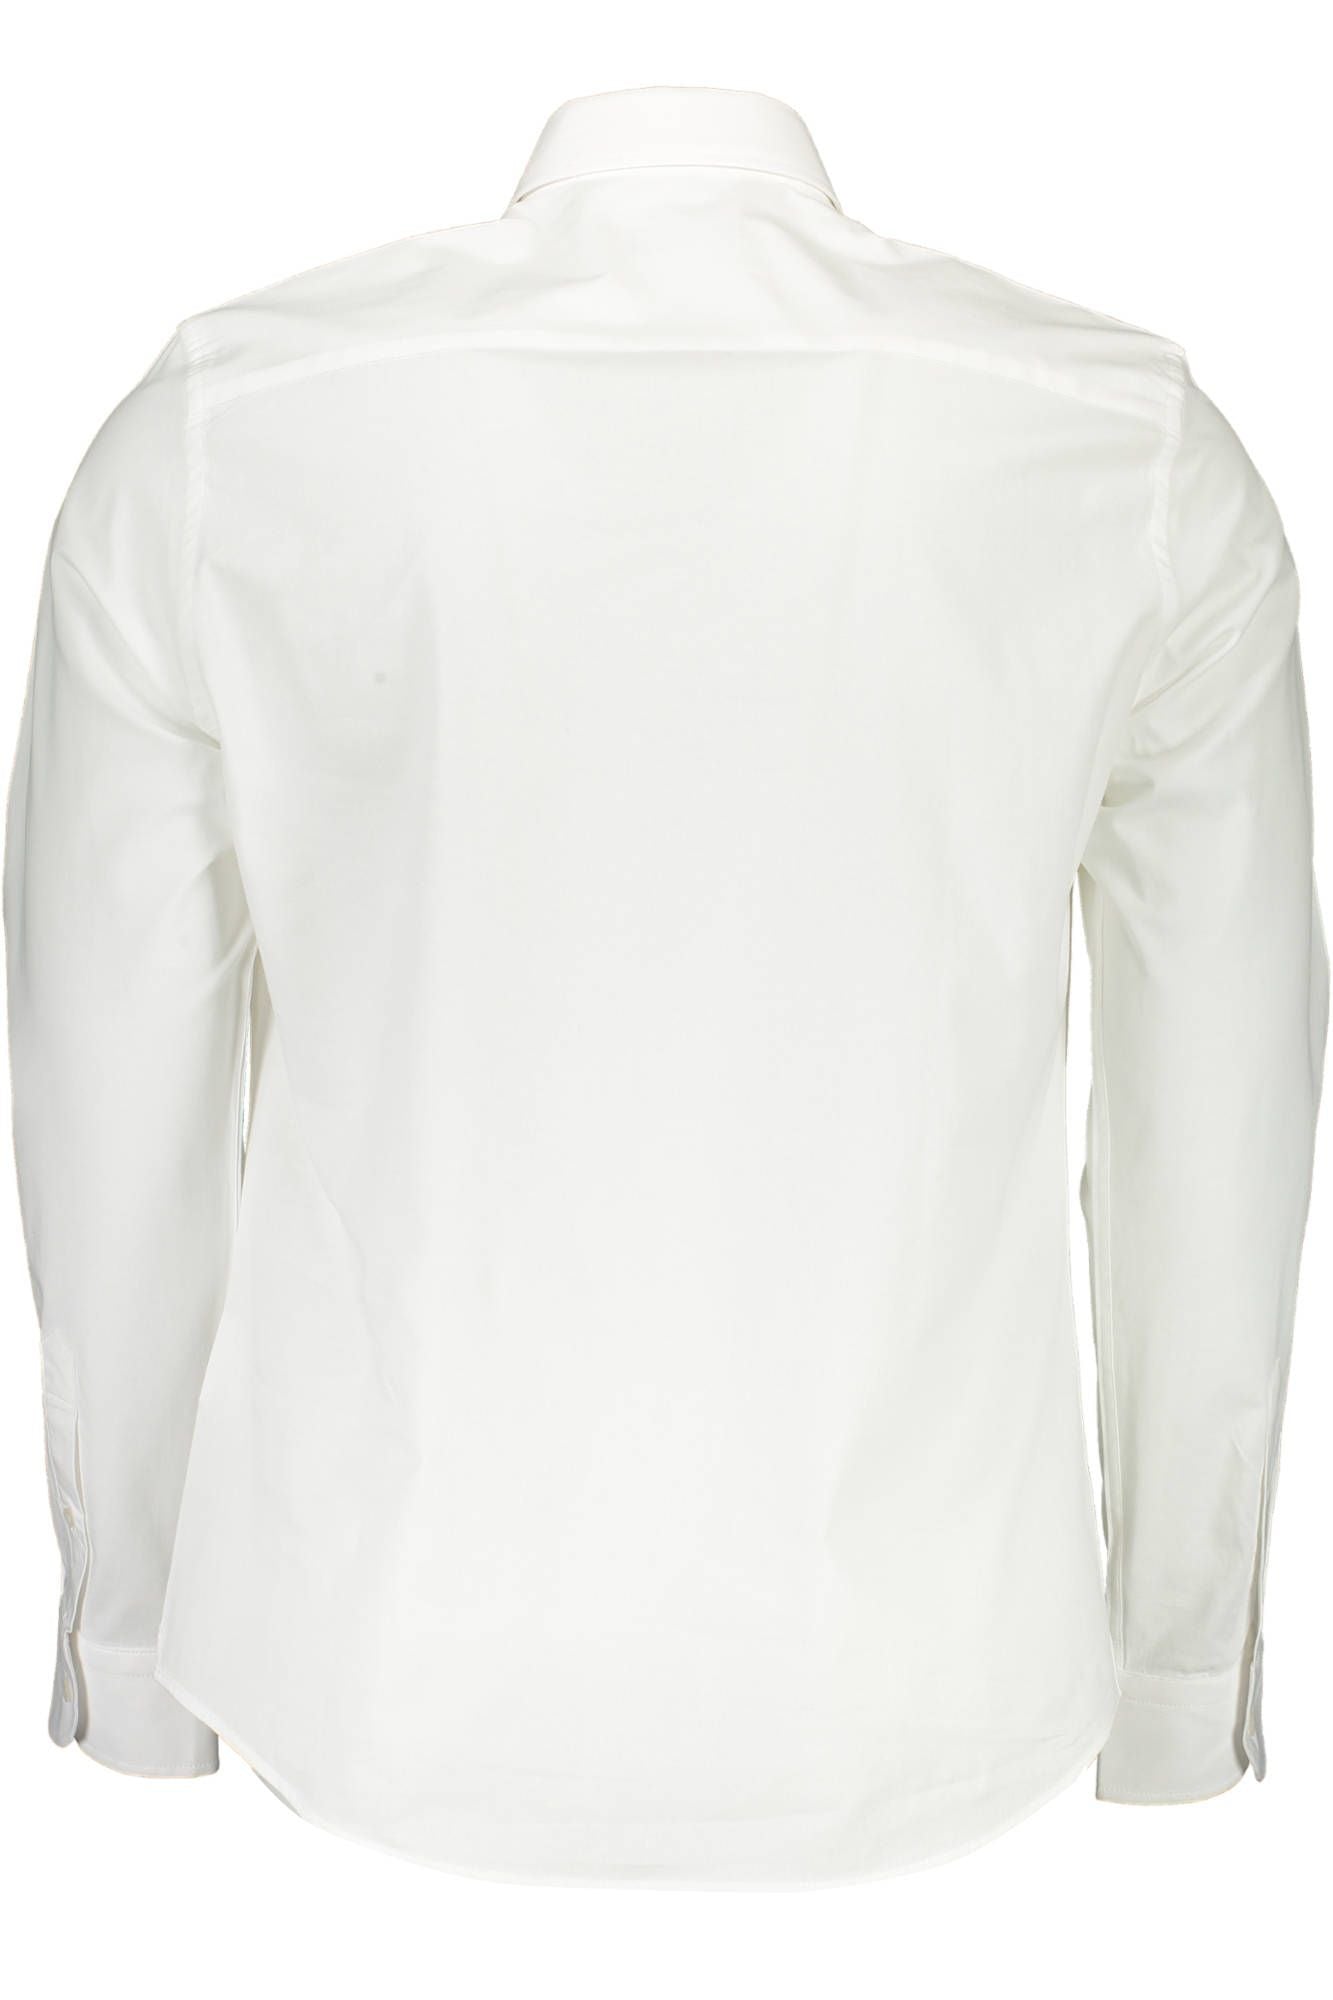 North Sails Elegant White Stretch Cotton Shirt